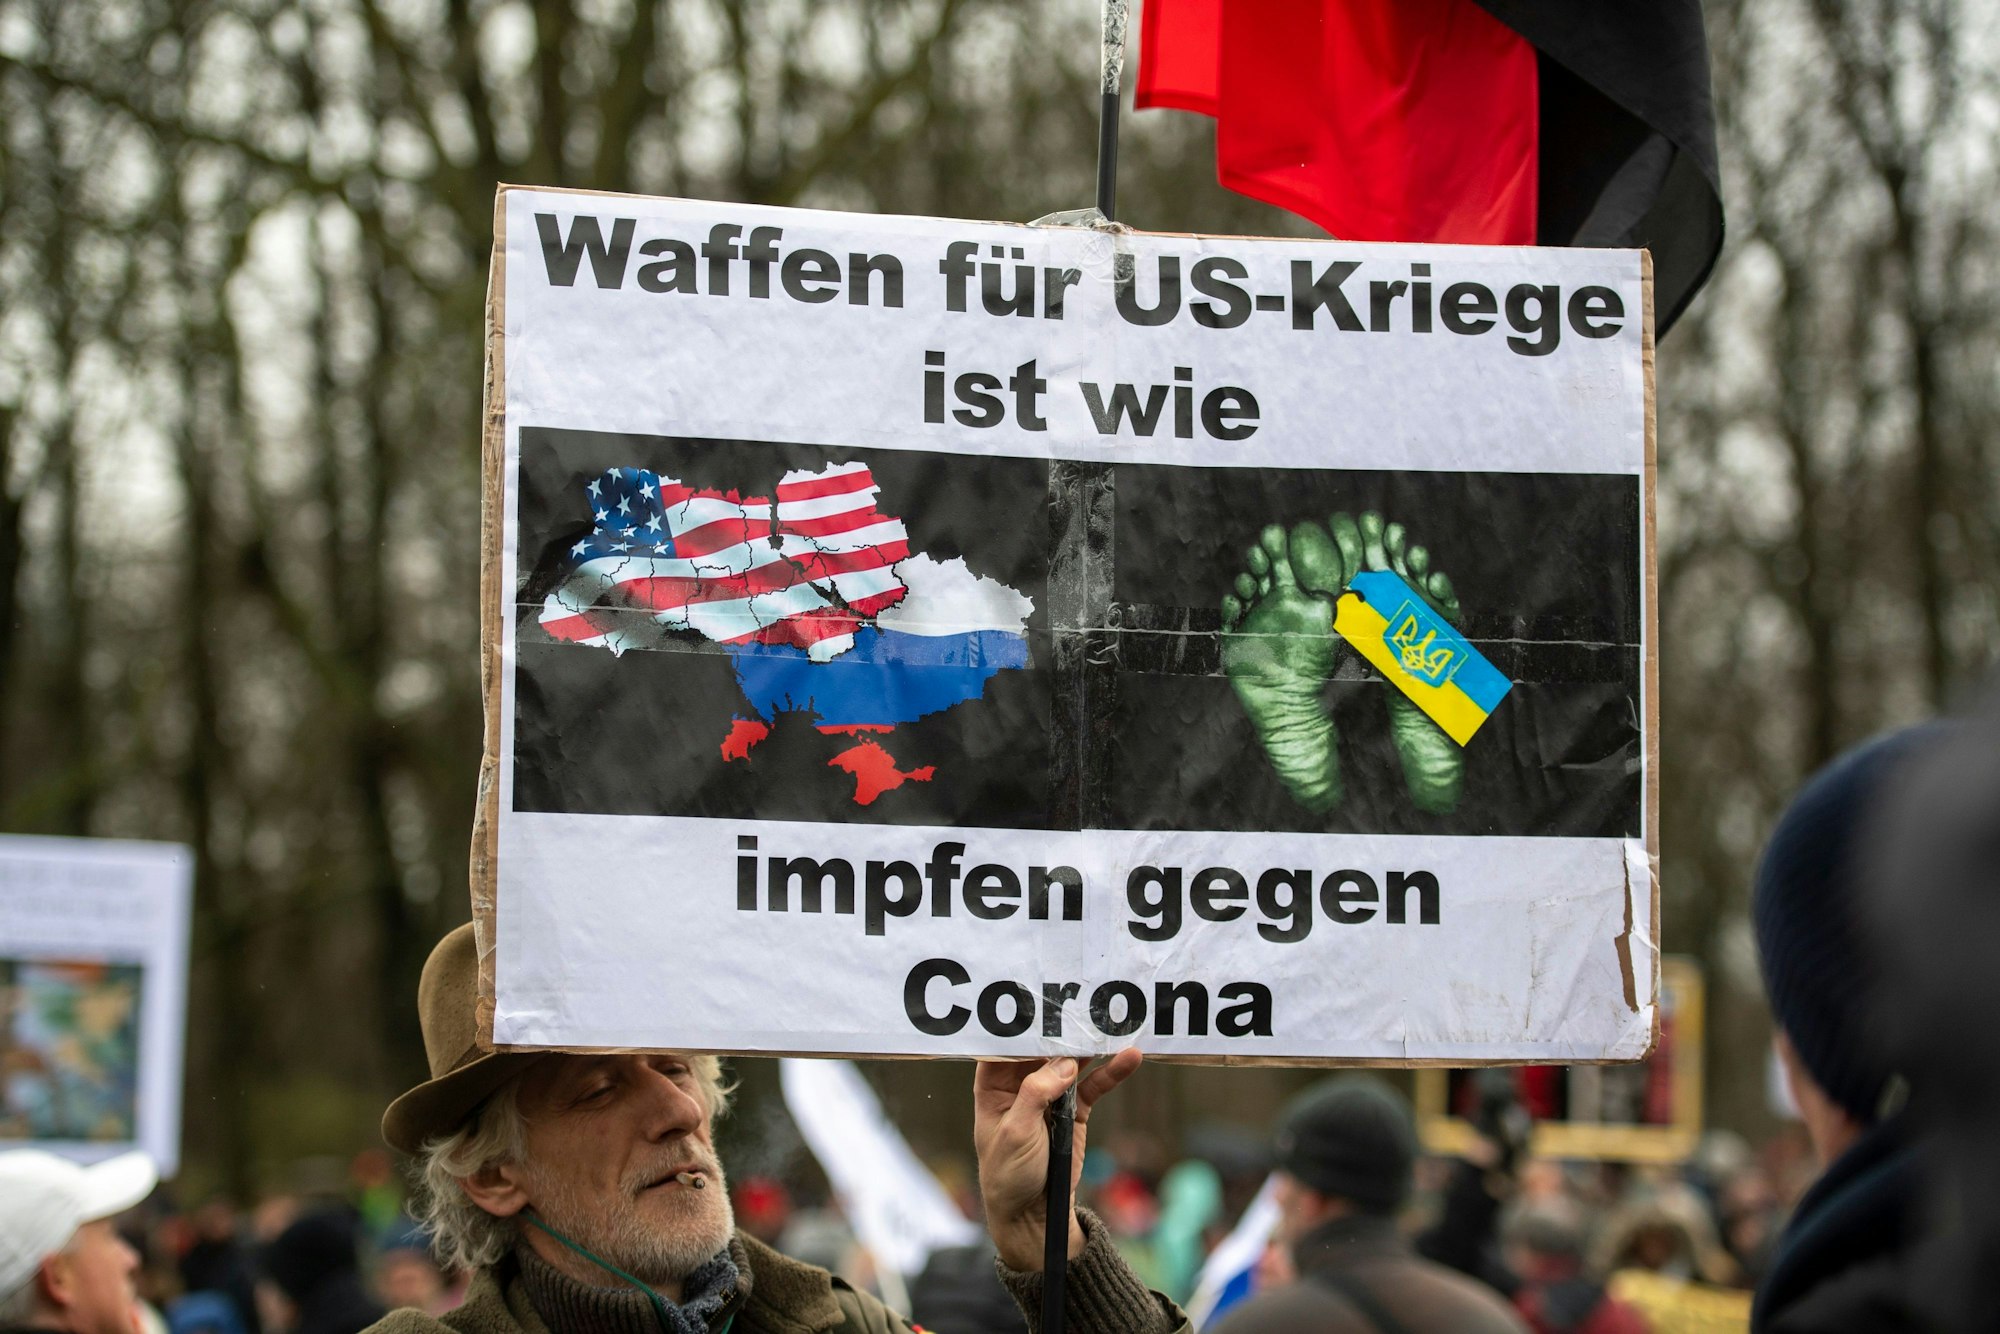 Ein Teilnehmer einer Demonstration für Verhandlungen mit Russland am Brandenburger Tor trägt ein Plakat mit der Aufschrift „Waffen für US-Kriege ist wie impfen gegen Corona“.